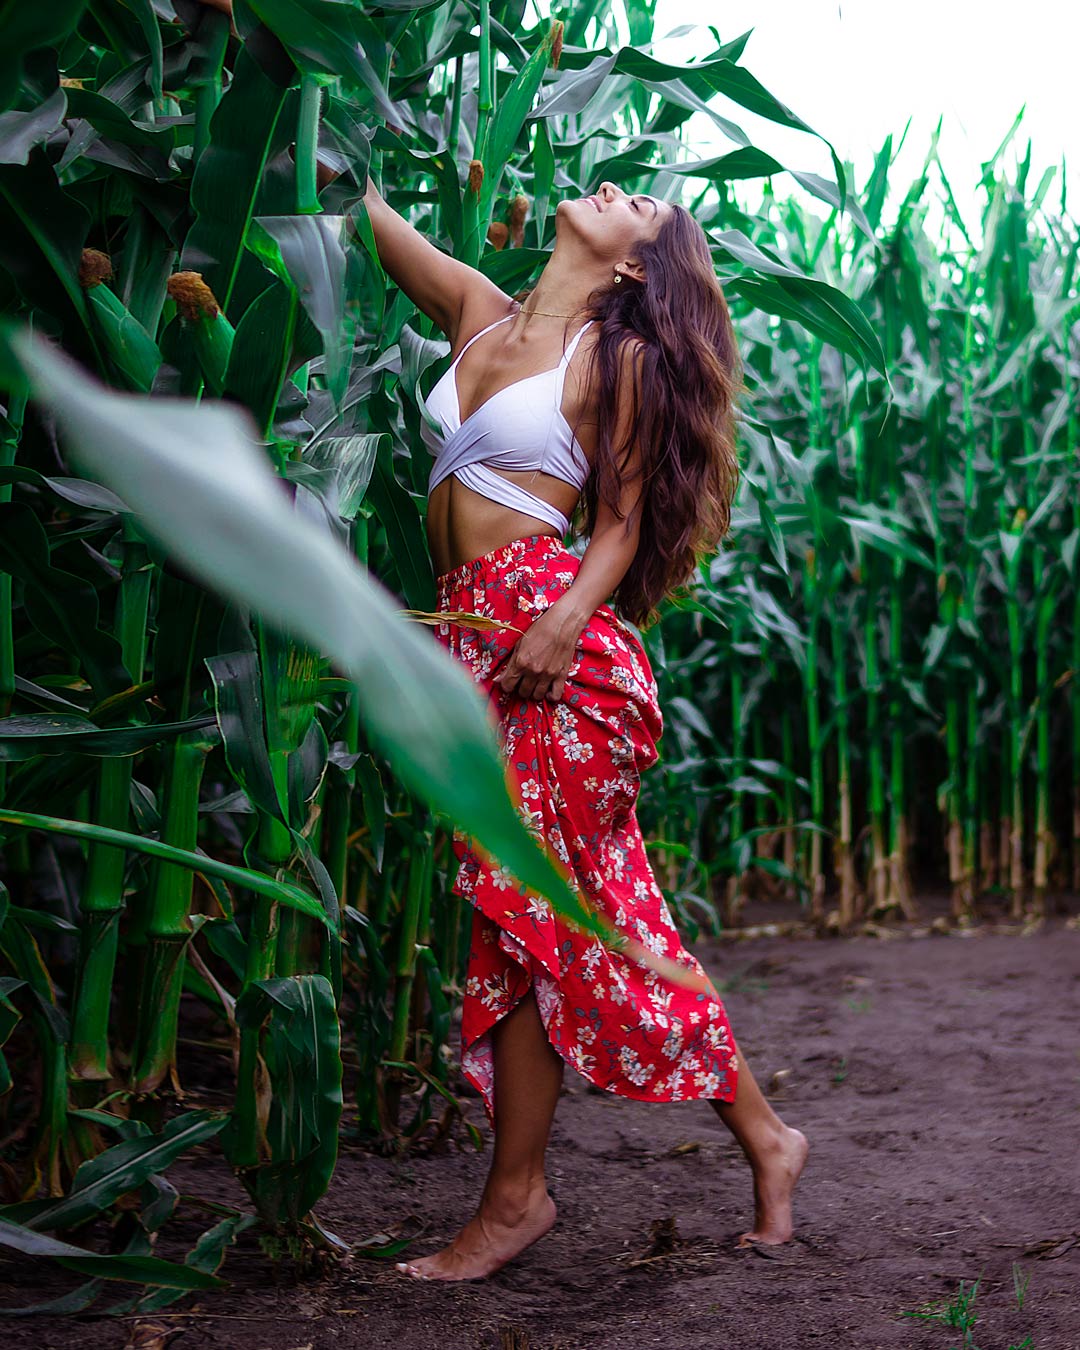 Junge Frau mit roten Rock im Maisfeld bei einem Portrait Fotoshooting